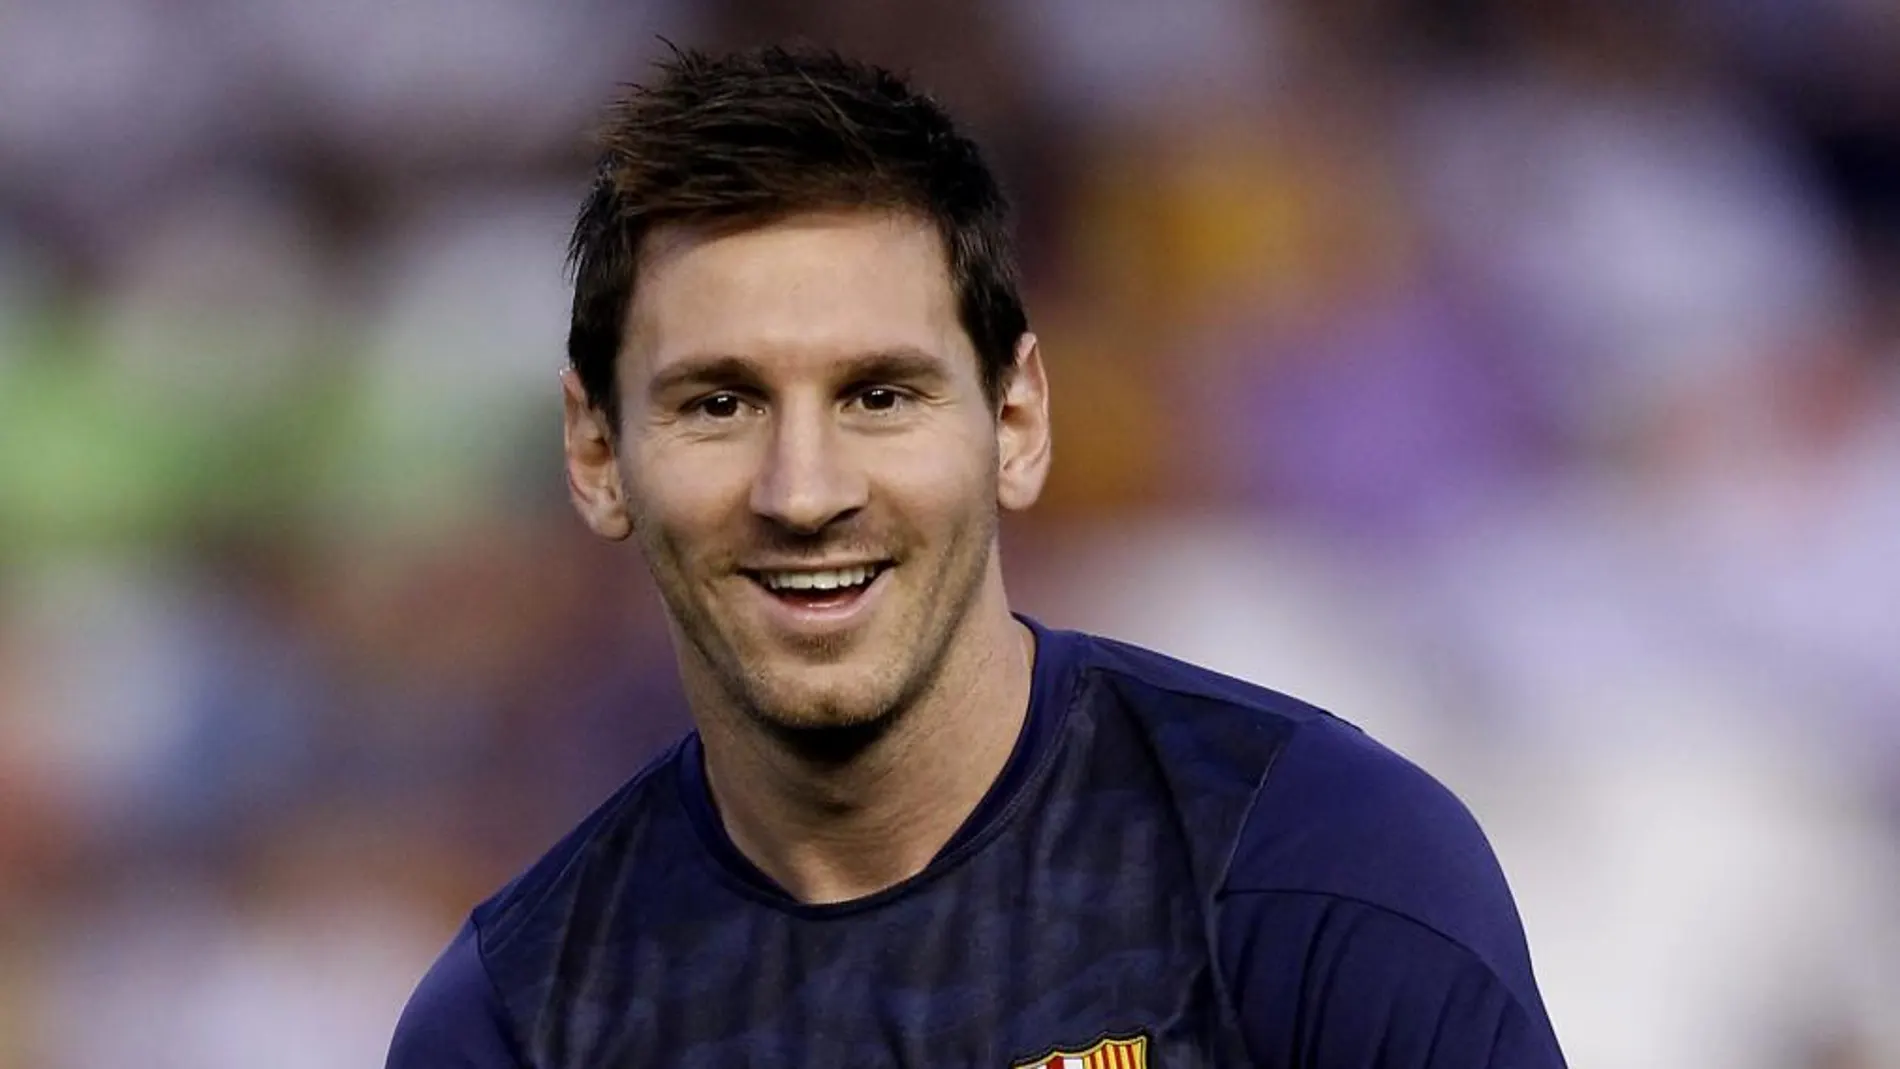 El futbolista argentino Leo Messi